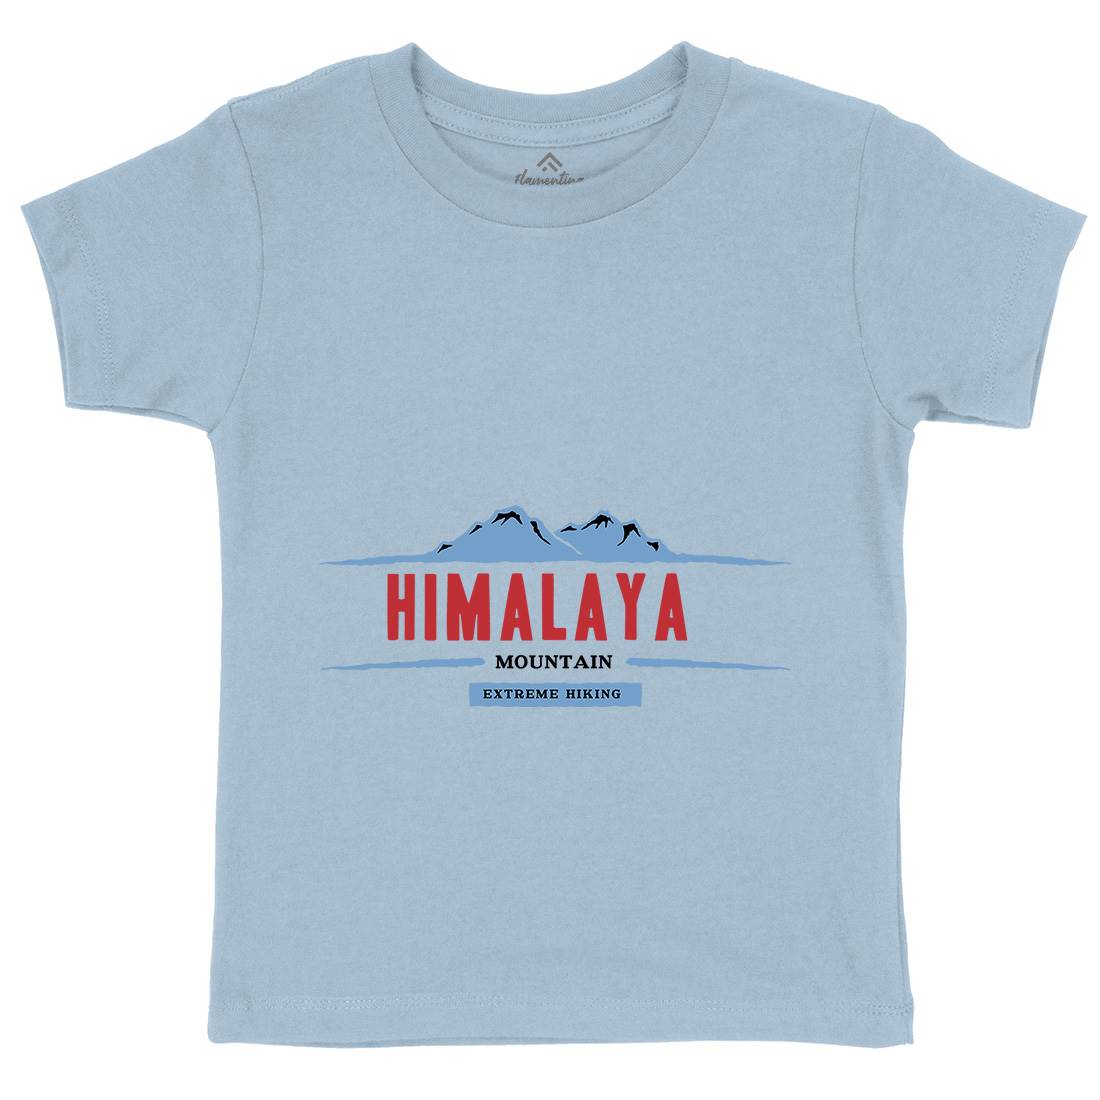 Himalaya Mountain Kids Crew Neck T-Shirt Nature A329